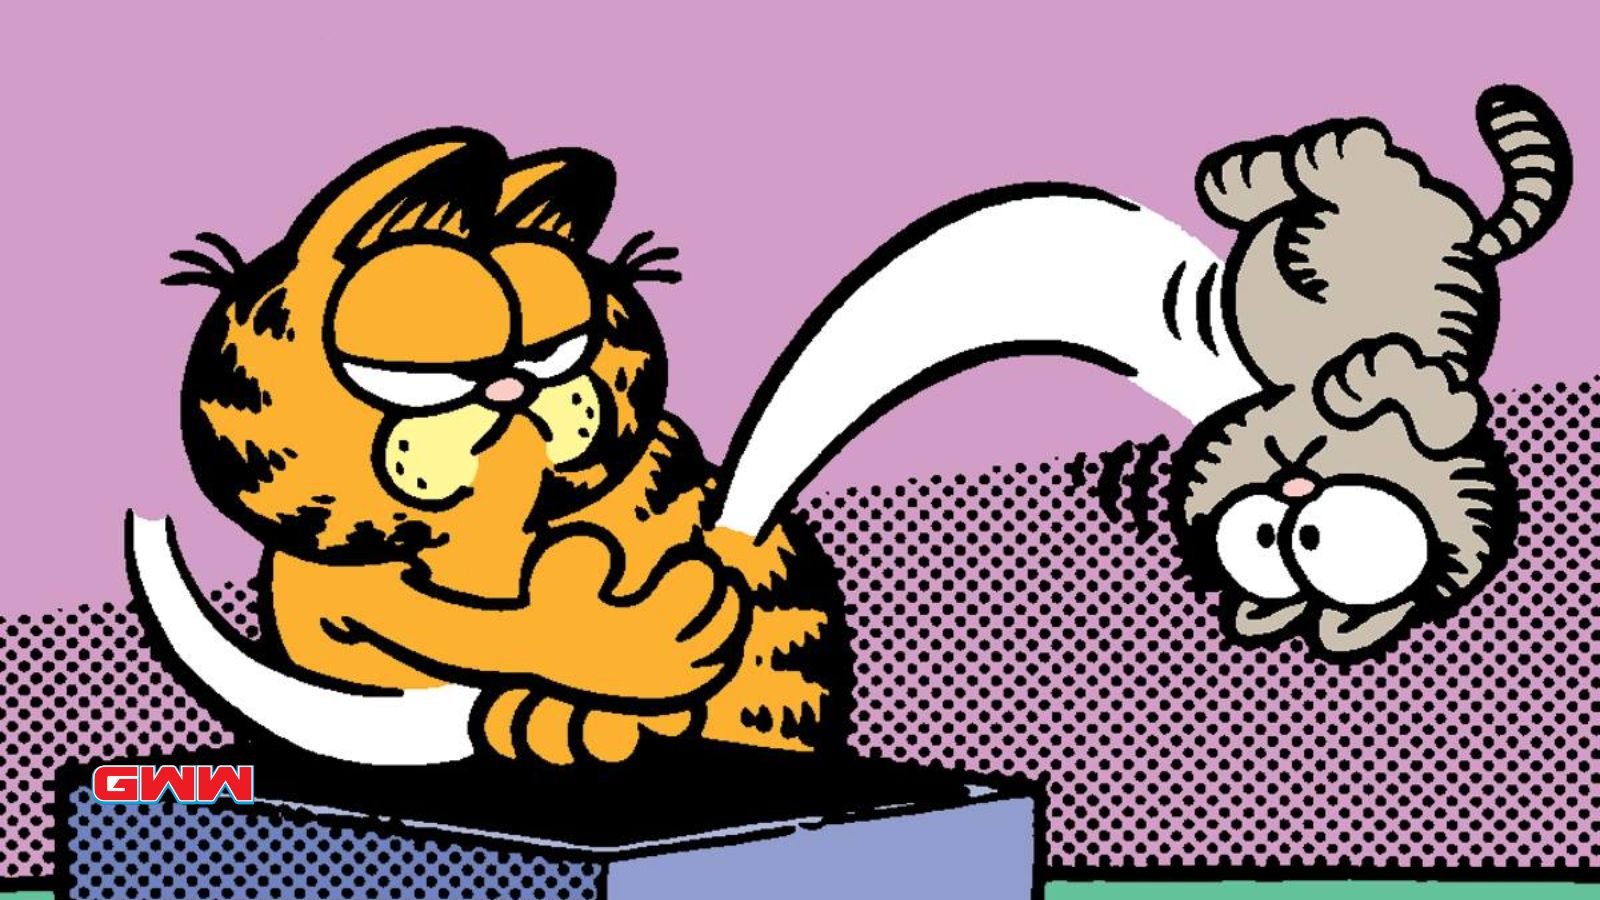 Garfield kicking Nermal away, Garfield The Movie Nermal